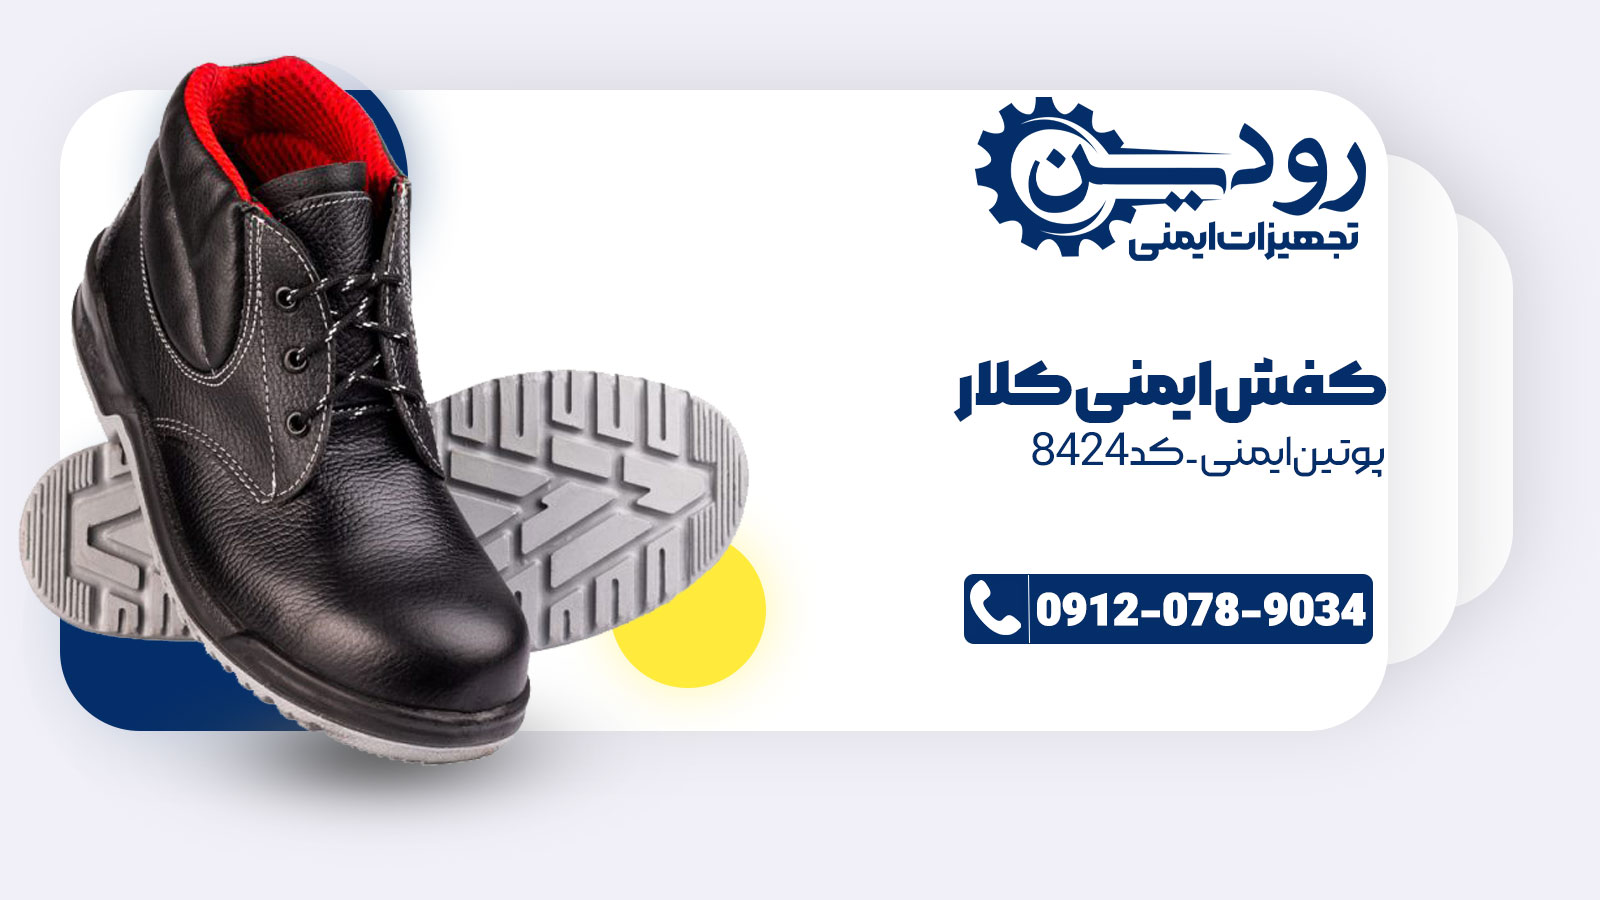 فروش کفش ایمنی کلار کد 1136 با ارزان ترین قیمت ممکن